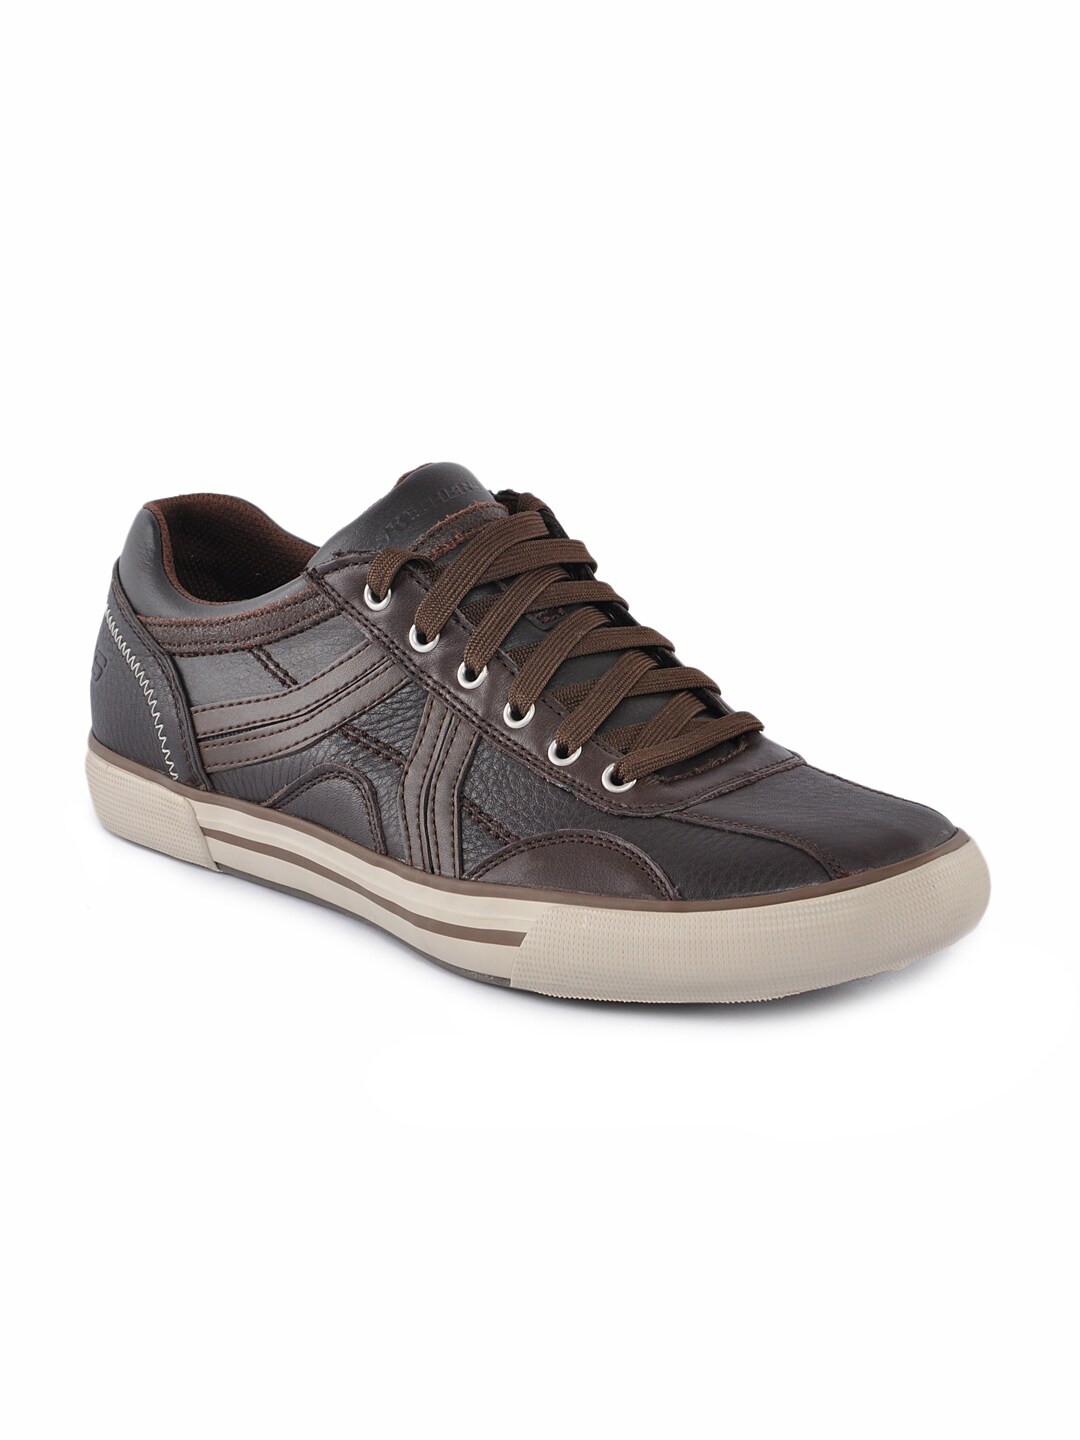 Skechers Men Zeta Brown Casual Shoes